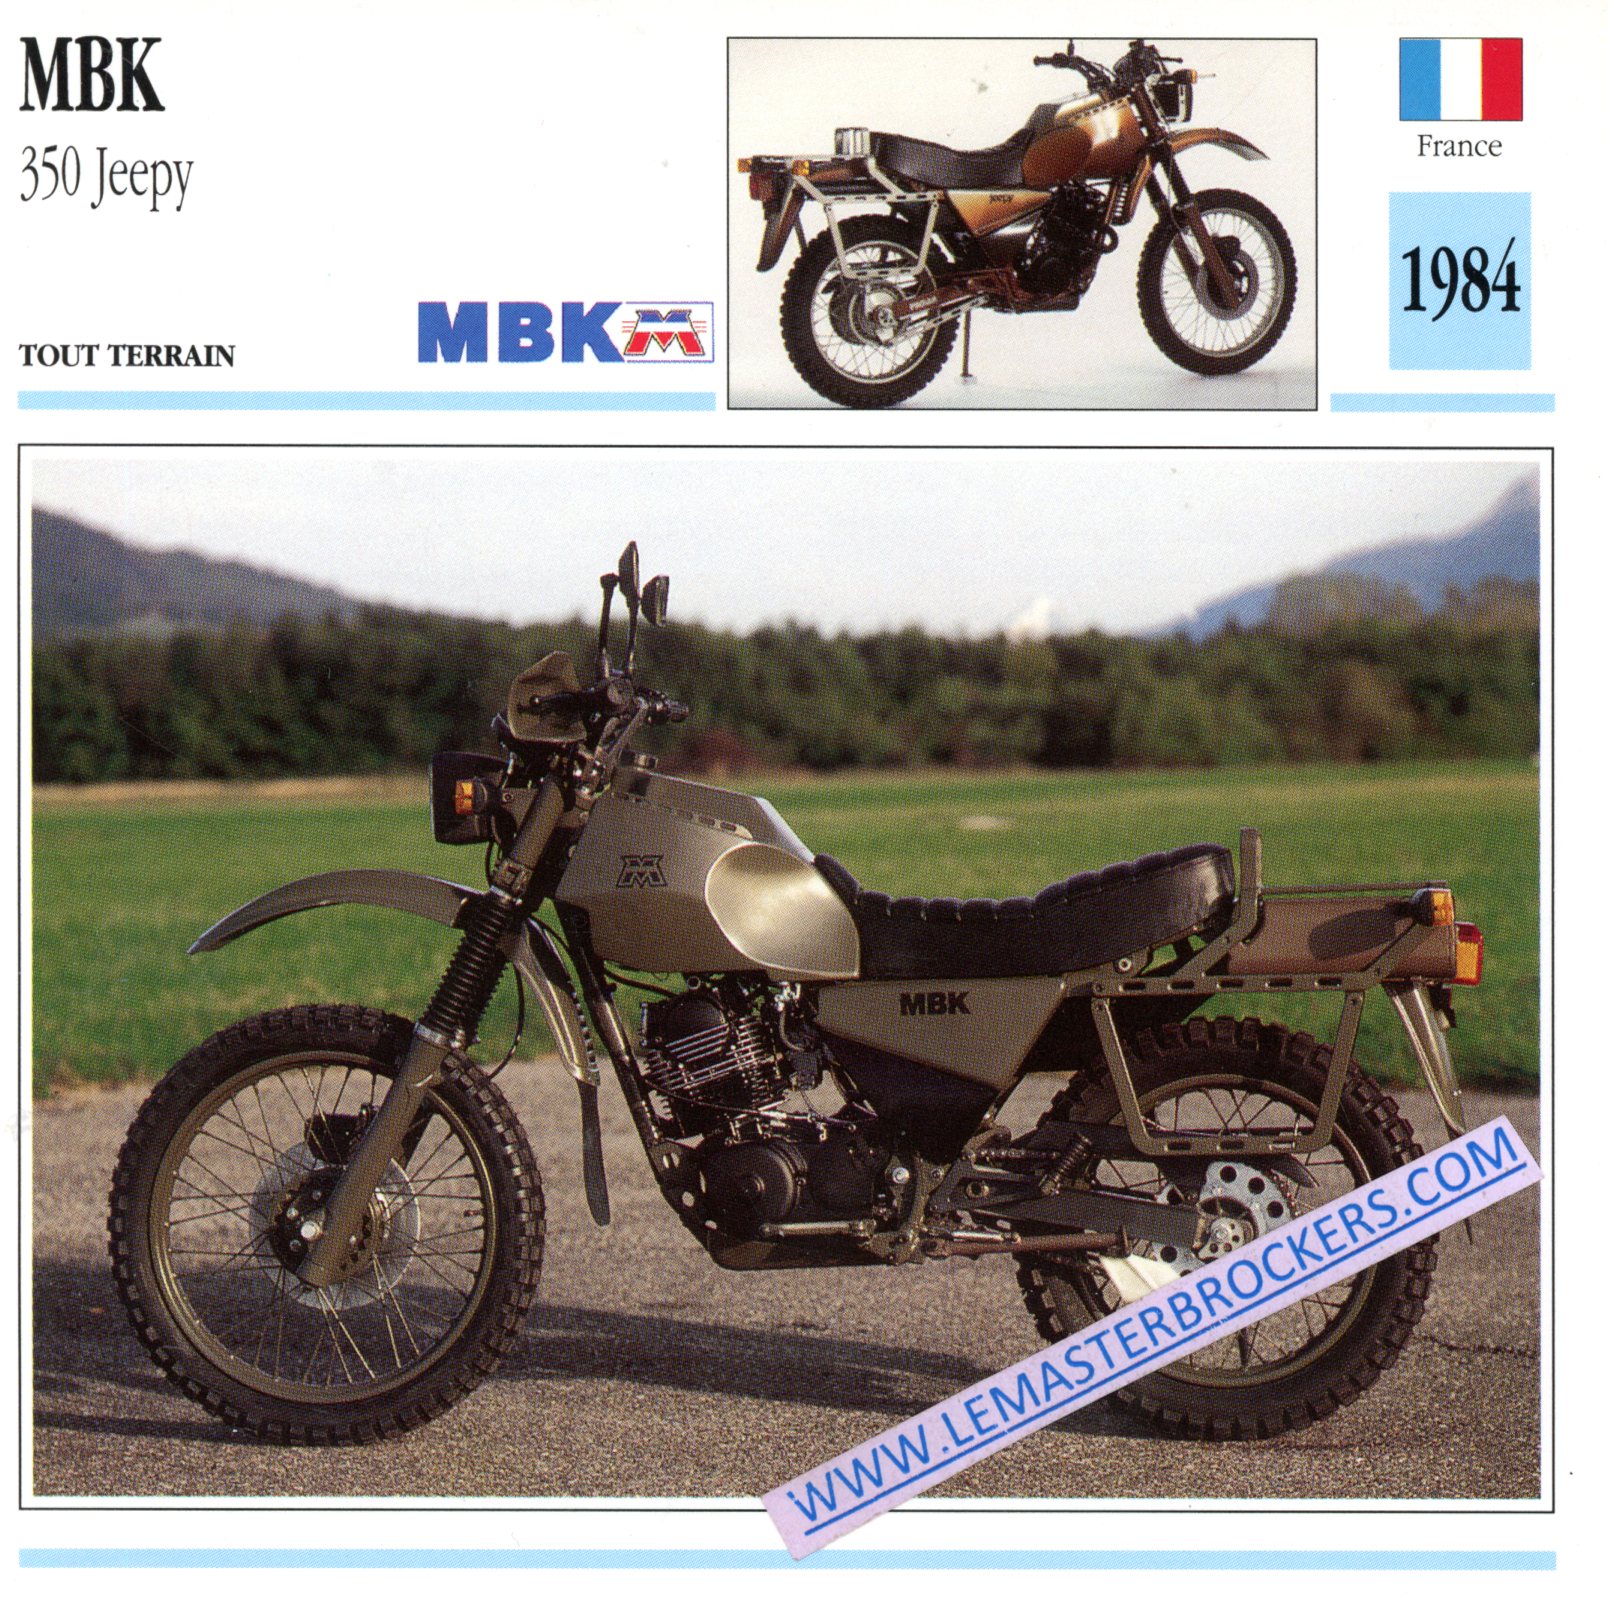 FICHE MBK 350 JEEPY 1984 - YAMAHA XT